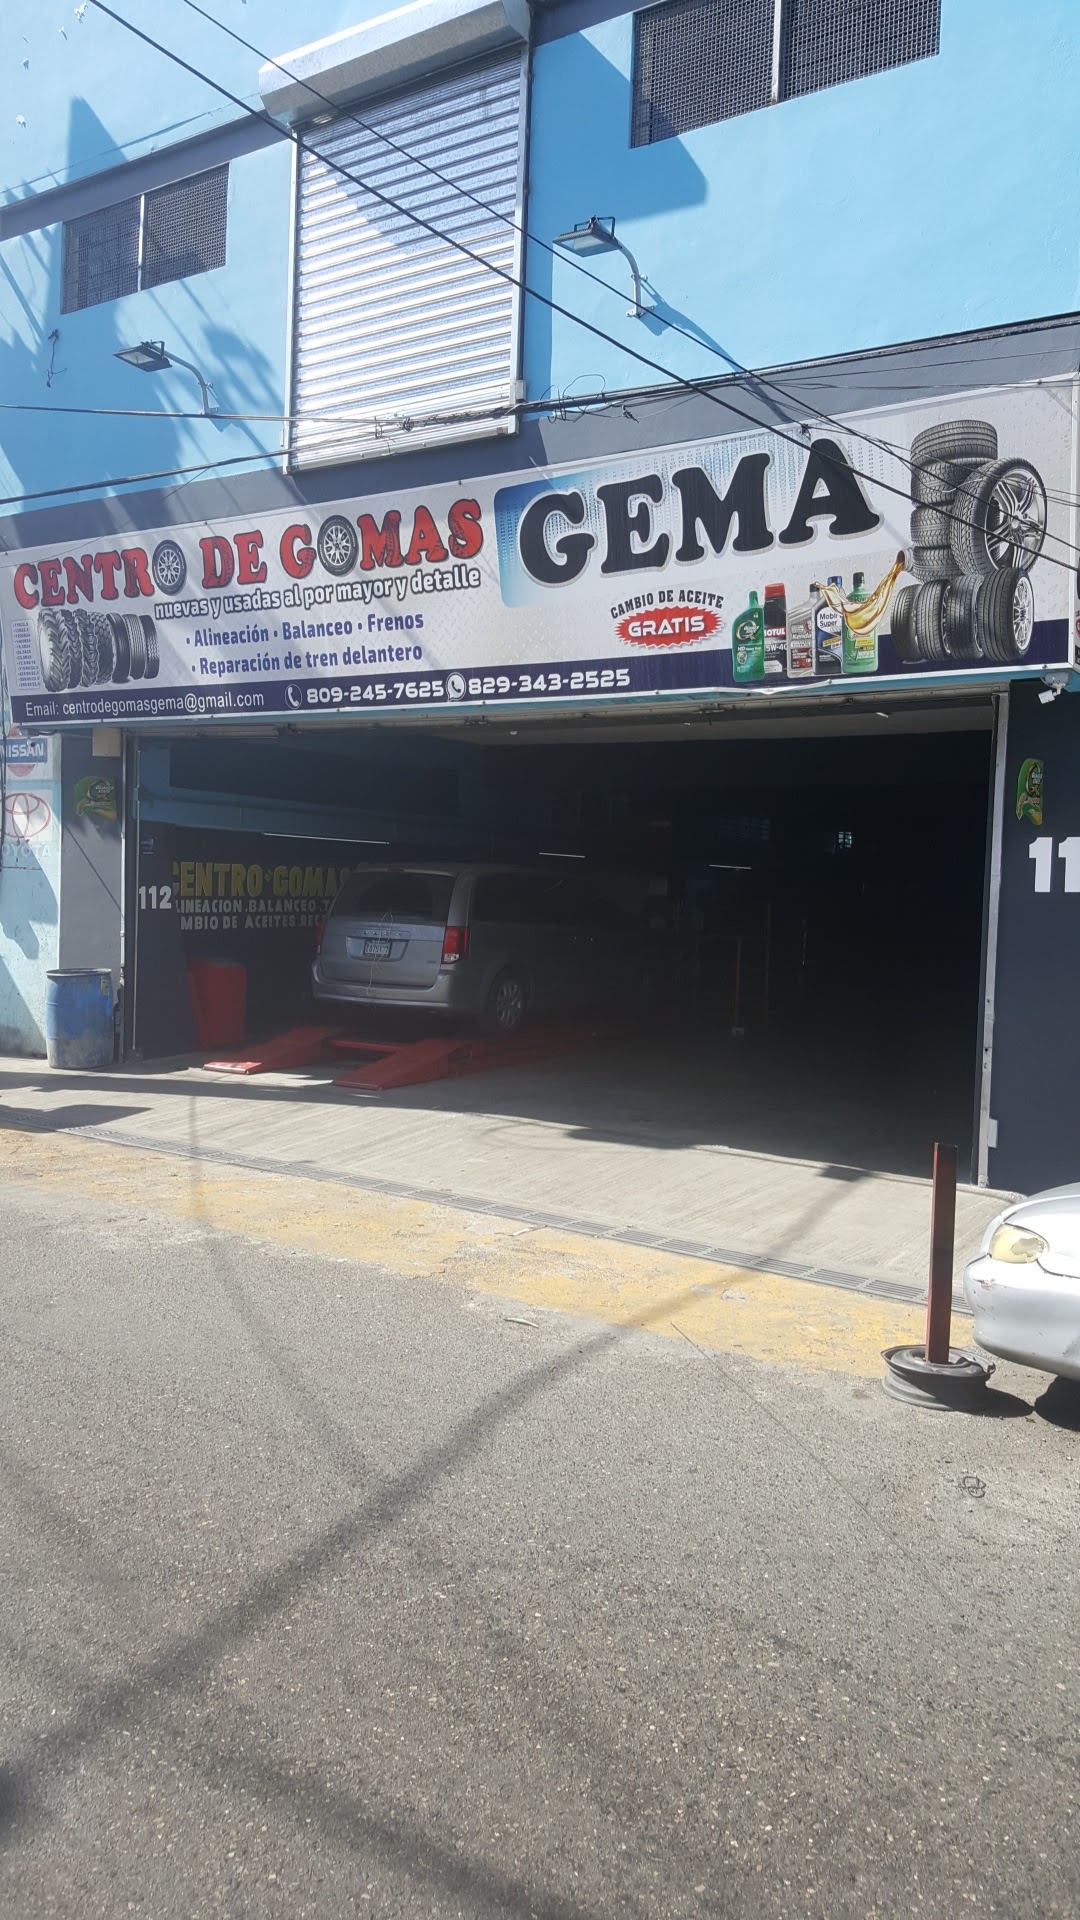 Centro De Gomas Gema